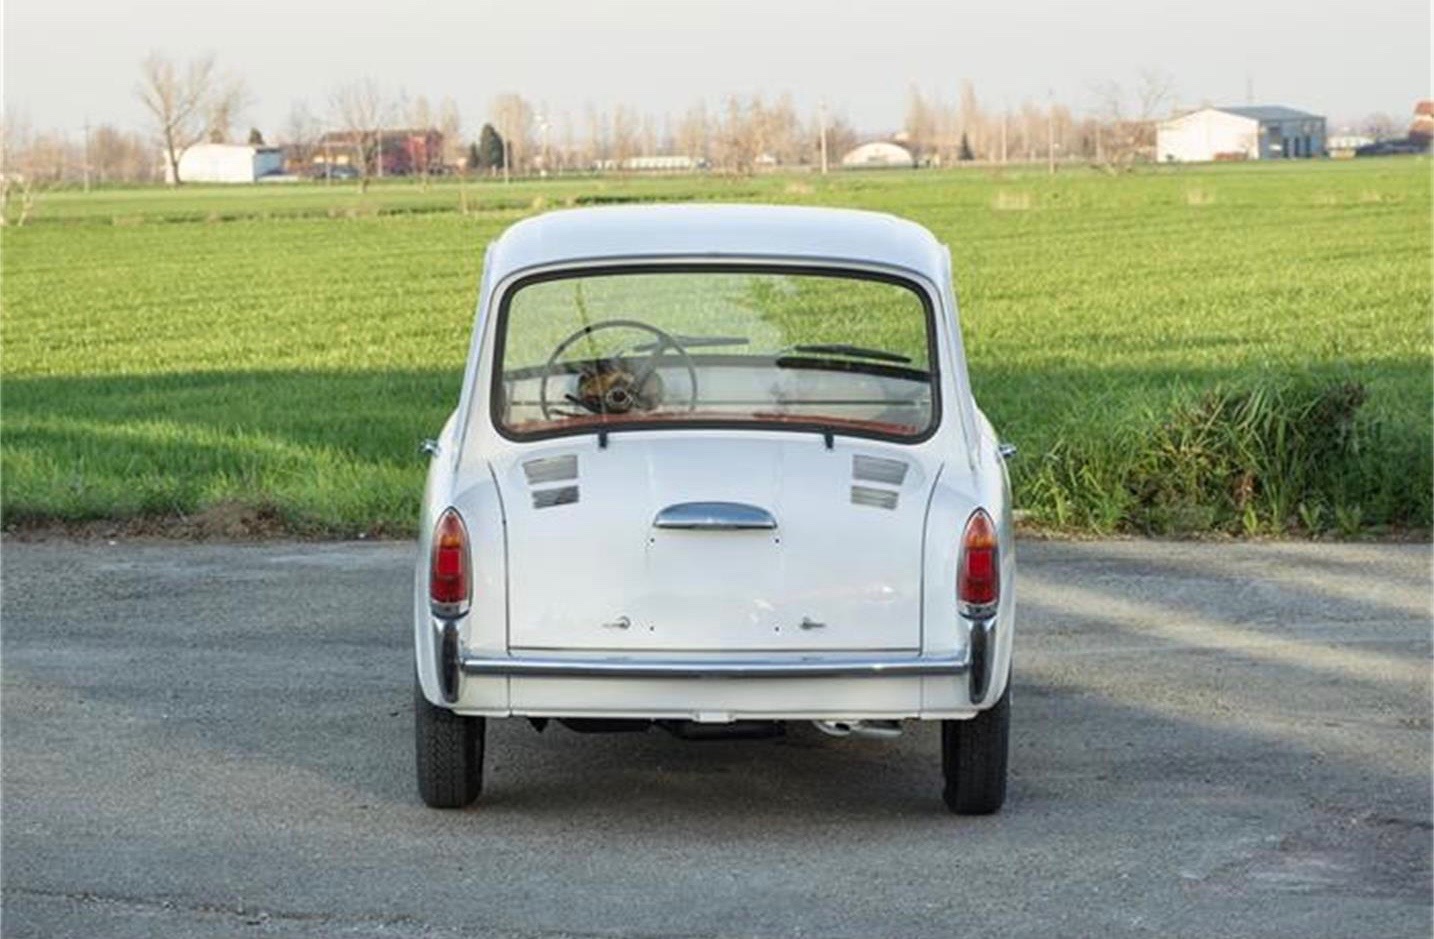 1964 Autobianchi, Italian job: Restored and micro-sized Autobianchi Bianchina, ClassicCars.com Journal